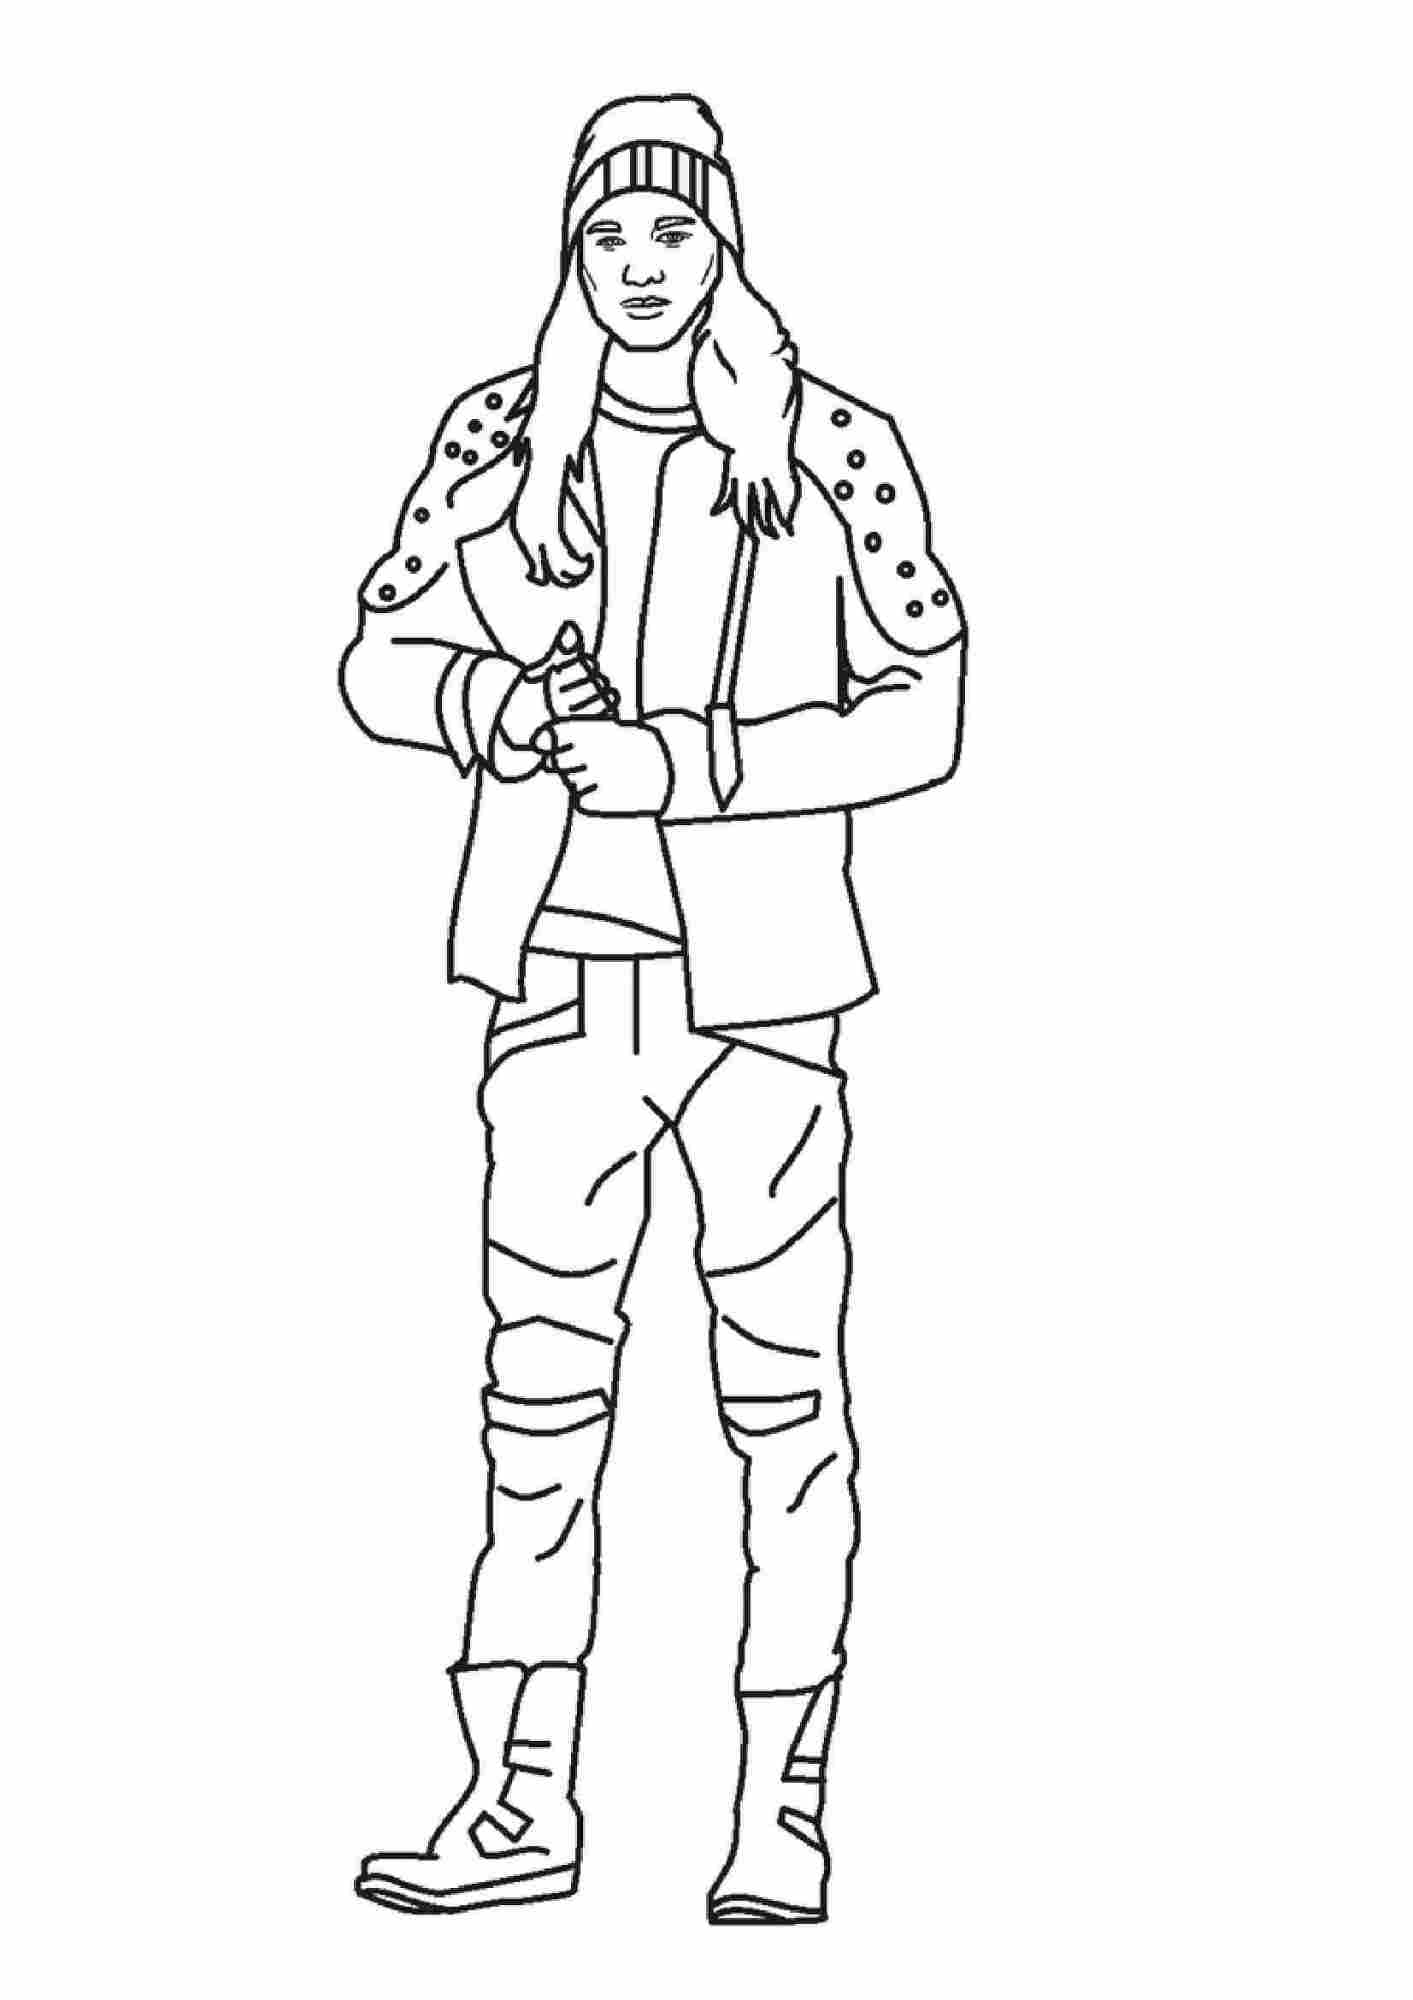 Раскраска Джей из "Наследников 2", сообразительный мальчик с большим обаянием